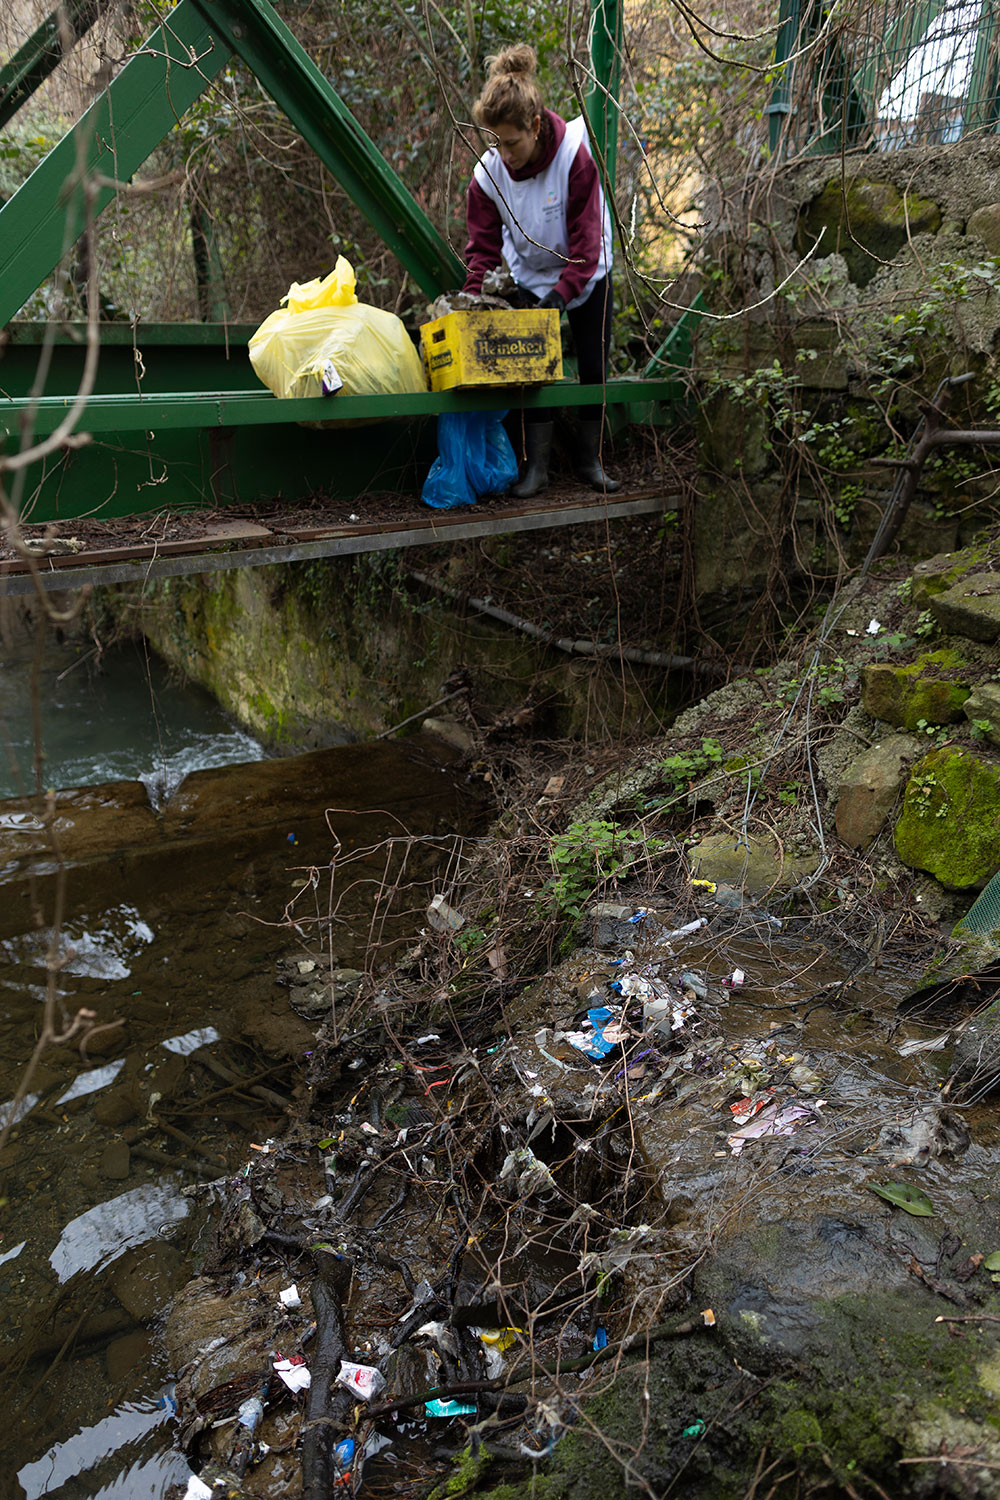 Activación Medioambiental: Experiencia limpieza del río Mañaria (Durango)